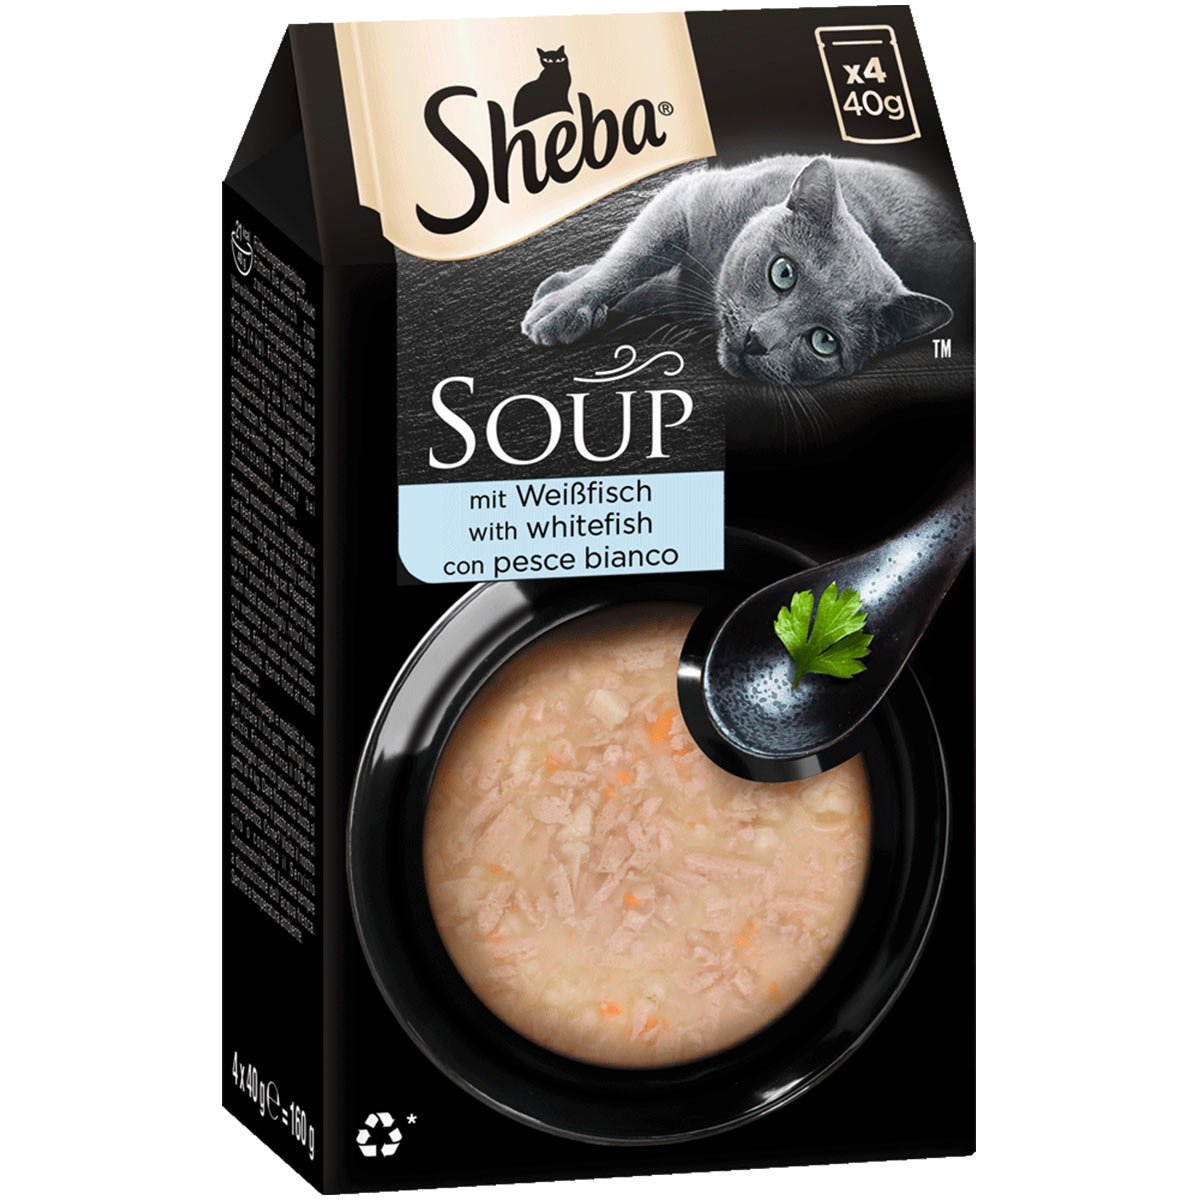 SHEBA Soup mit Weißfisch 4x40g von Sheba